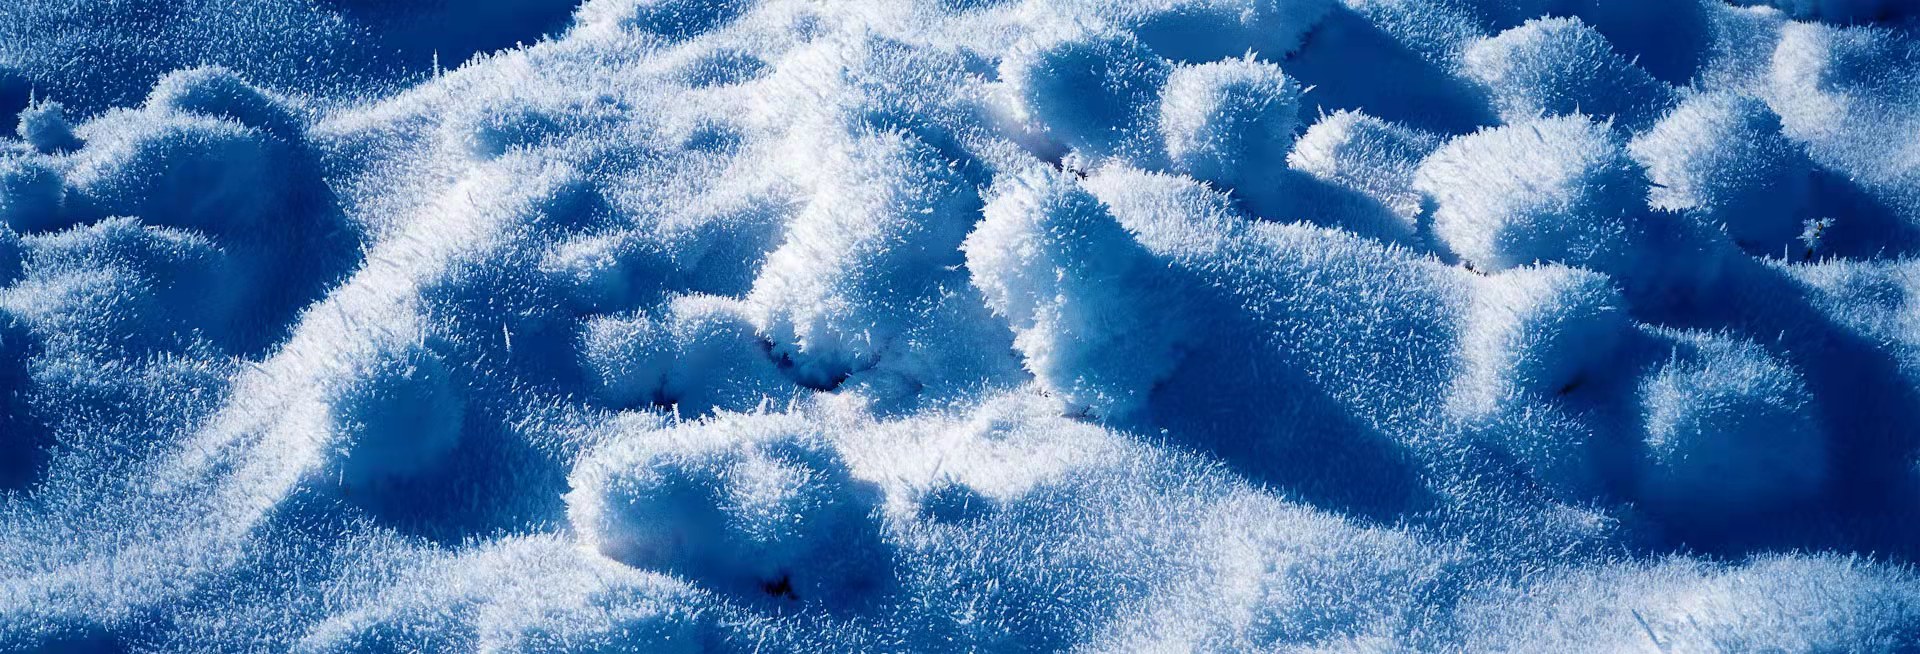 郎立兴冰雪摄影展在呼伦贝尔开展 用镜头记录超凡绝尘的冰雪艺术世界